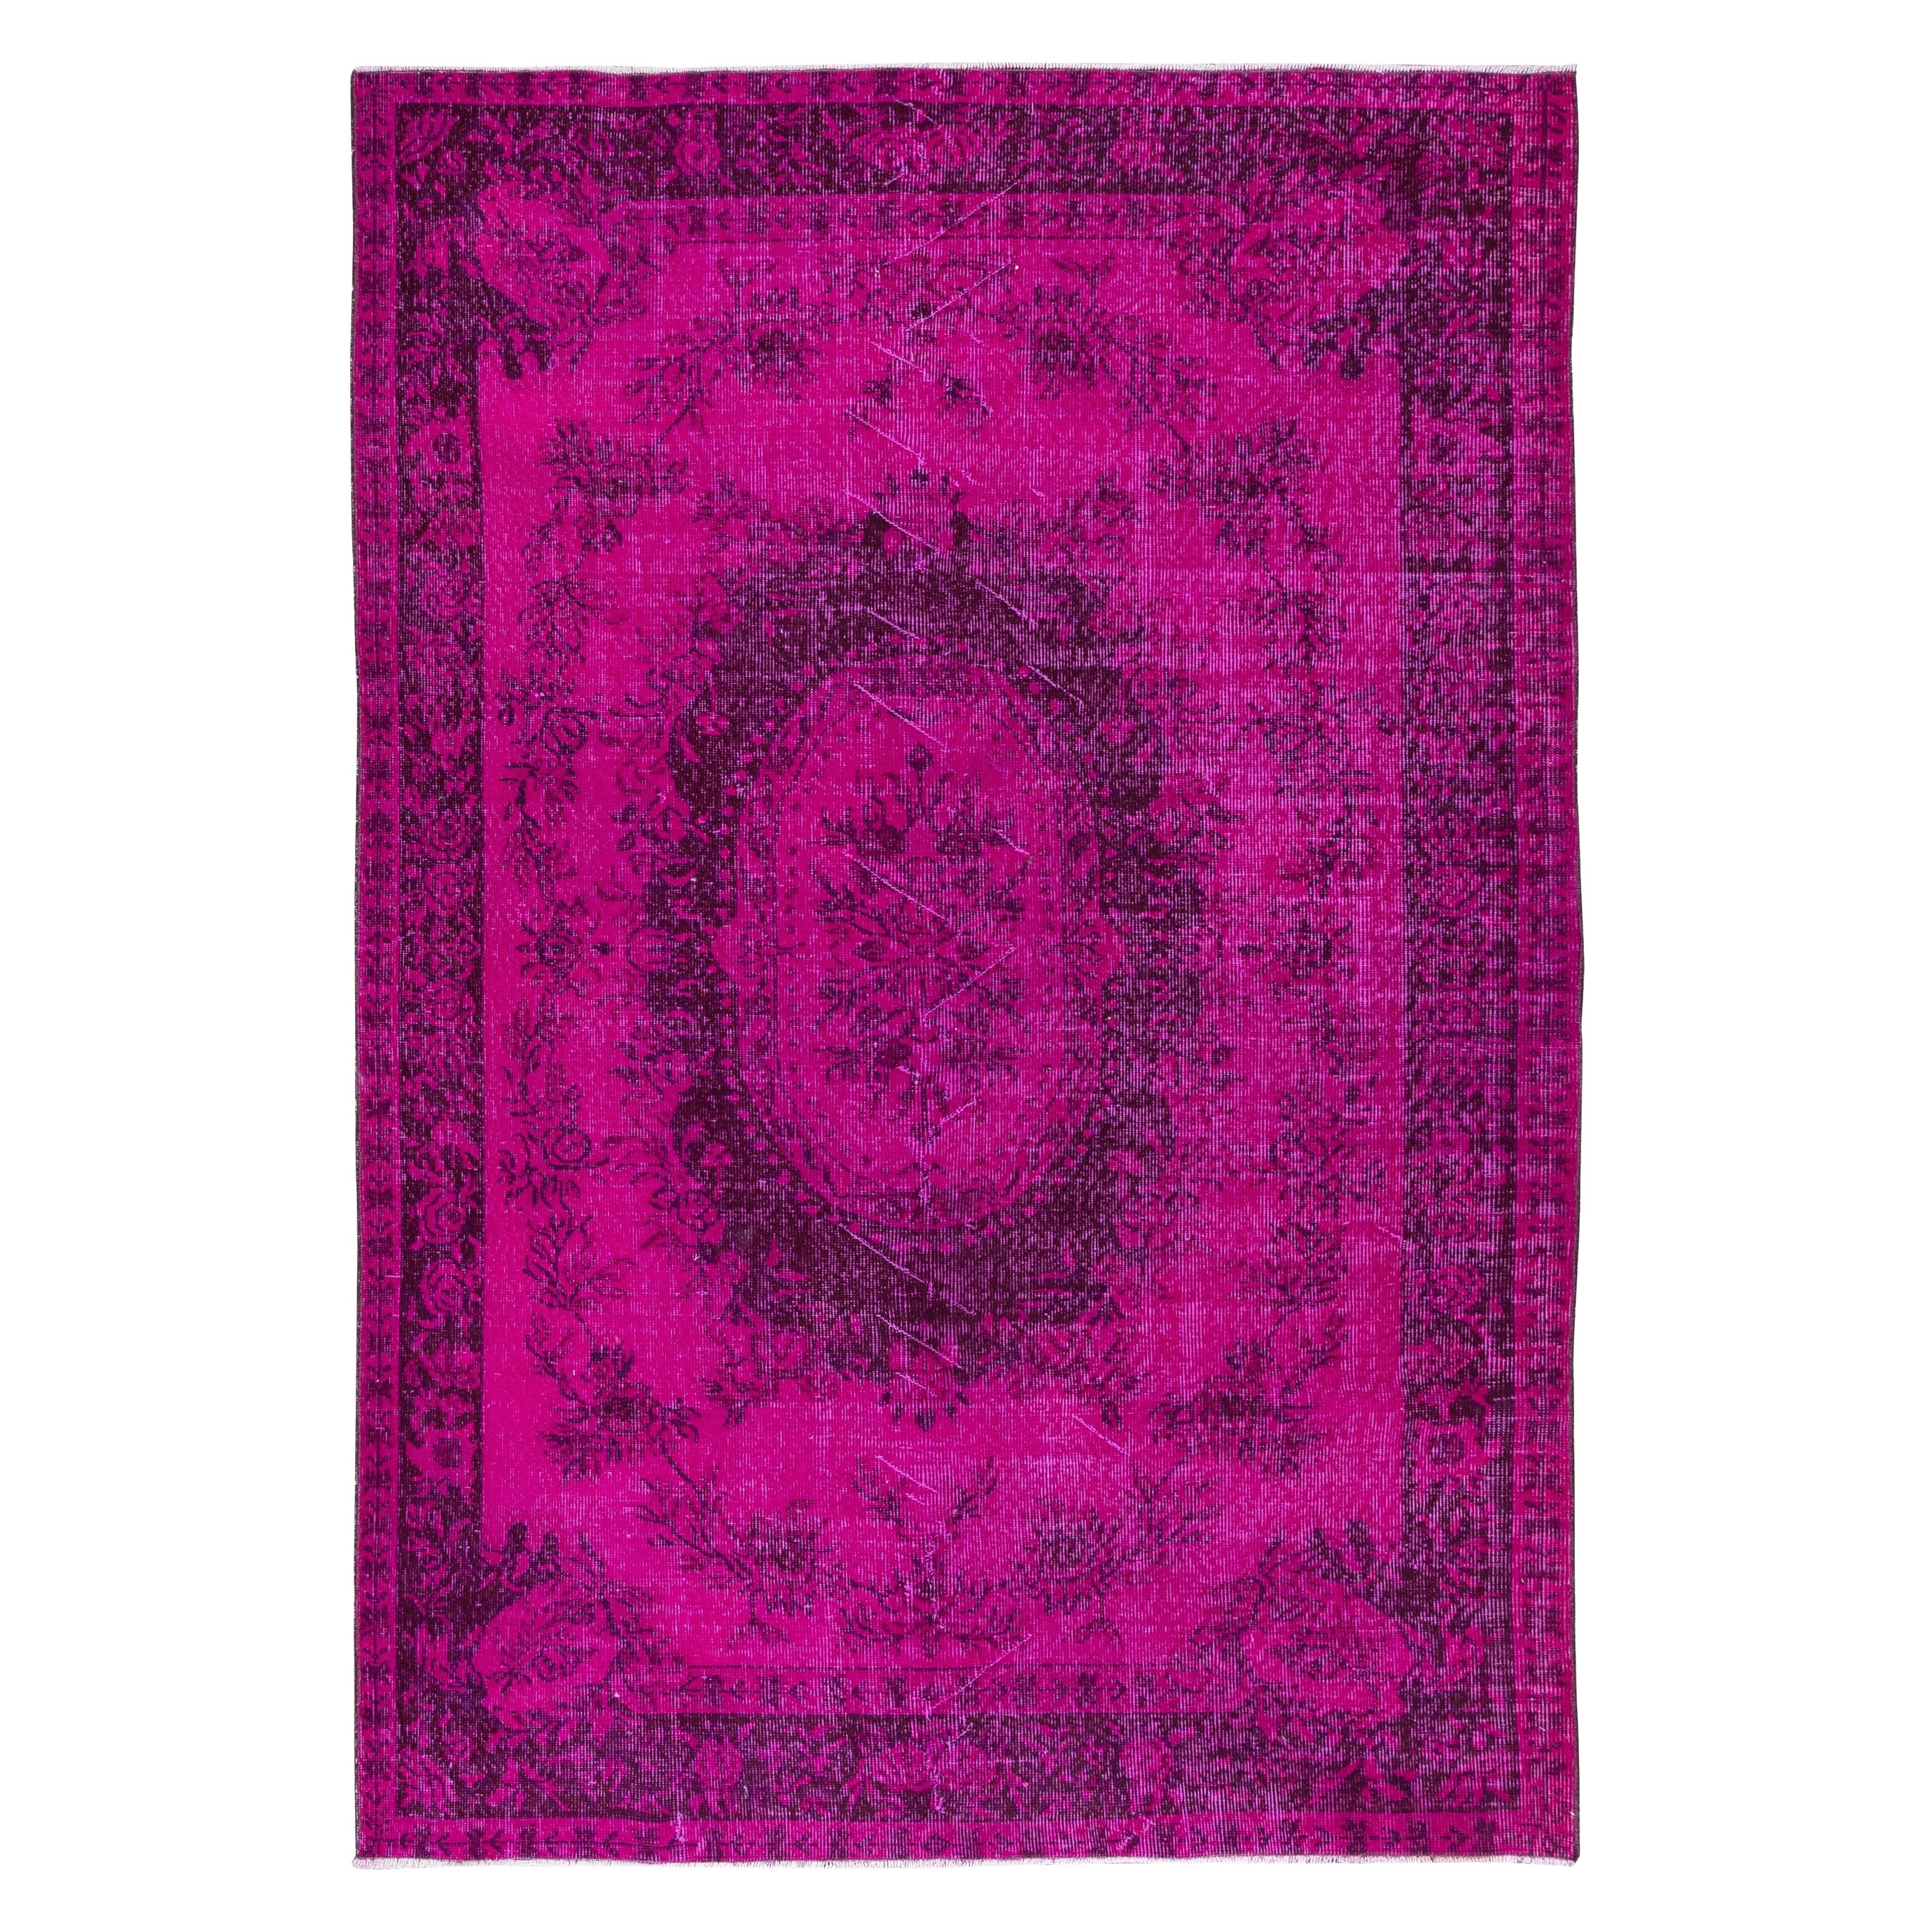 6x8.6 Ft Hot Pink Aubusson inspirierter Teppich für moderne Inneneinrichtung, handgefertigt in der Türkei